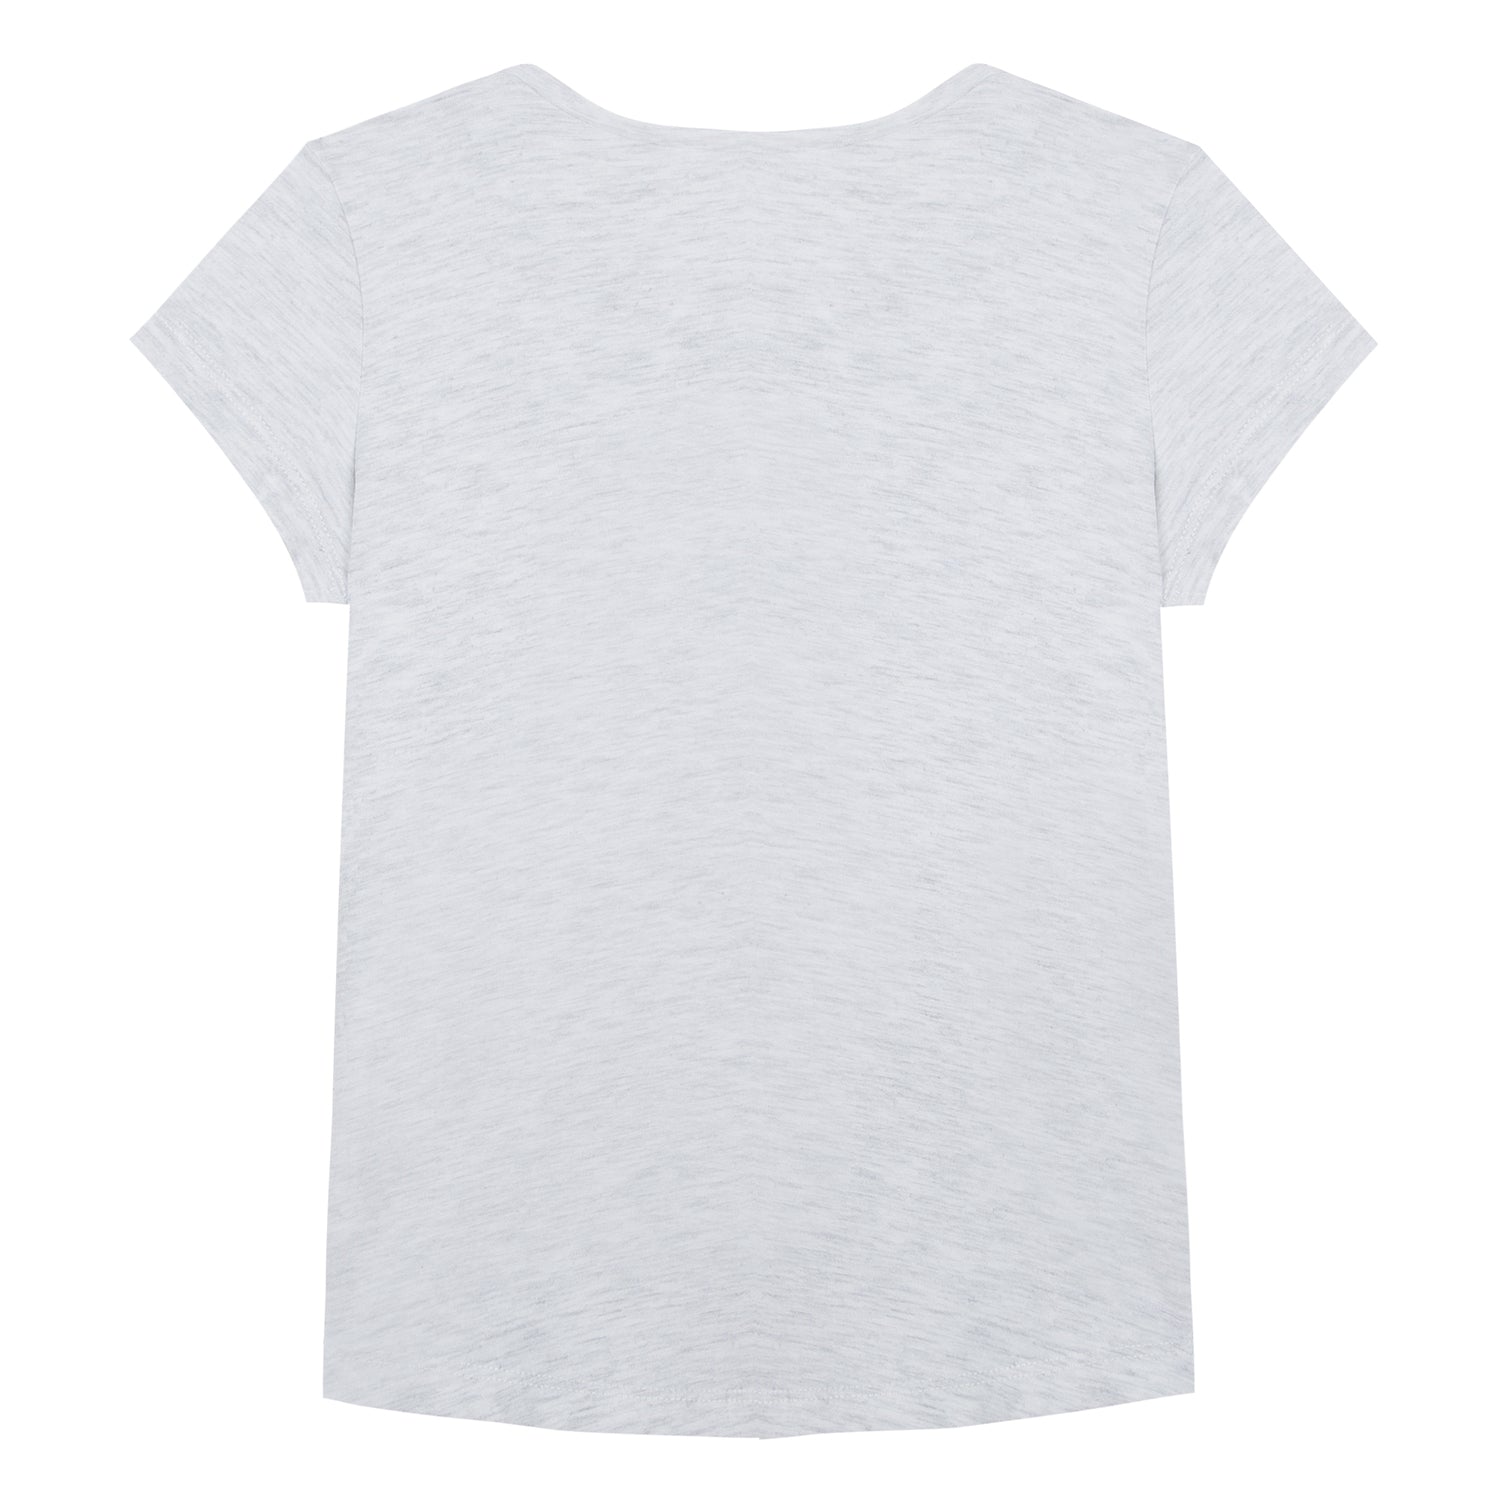 Girls Light Marl Grey Cotton T-shirt